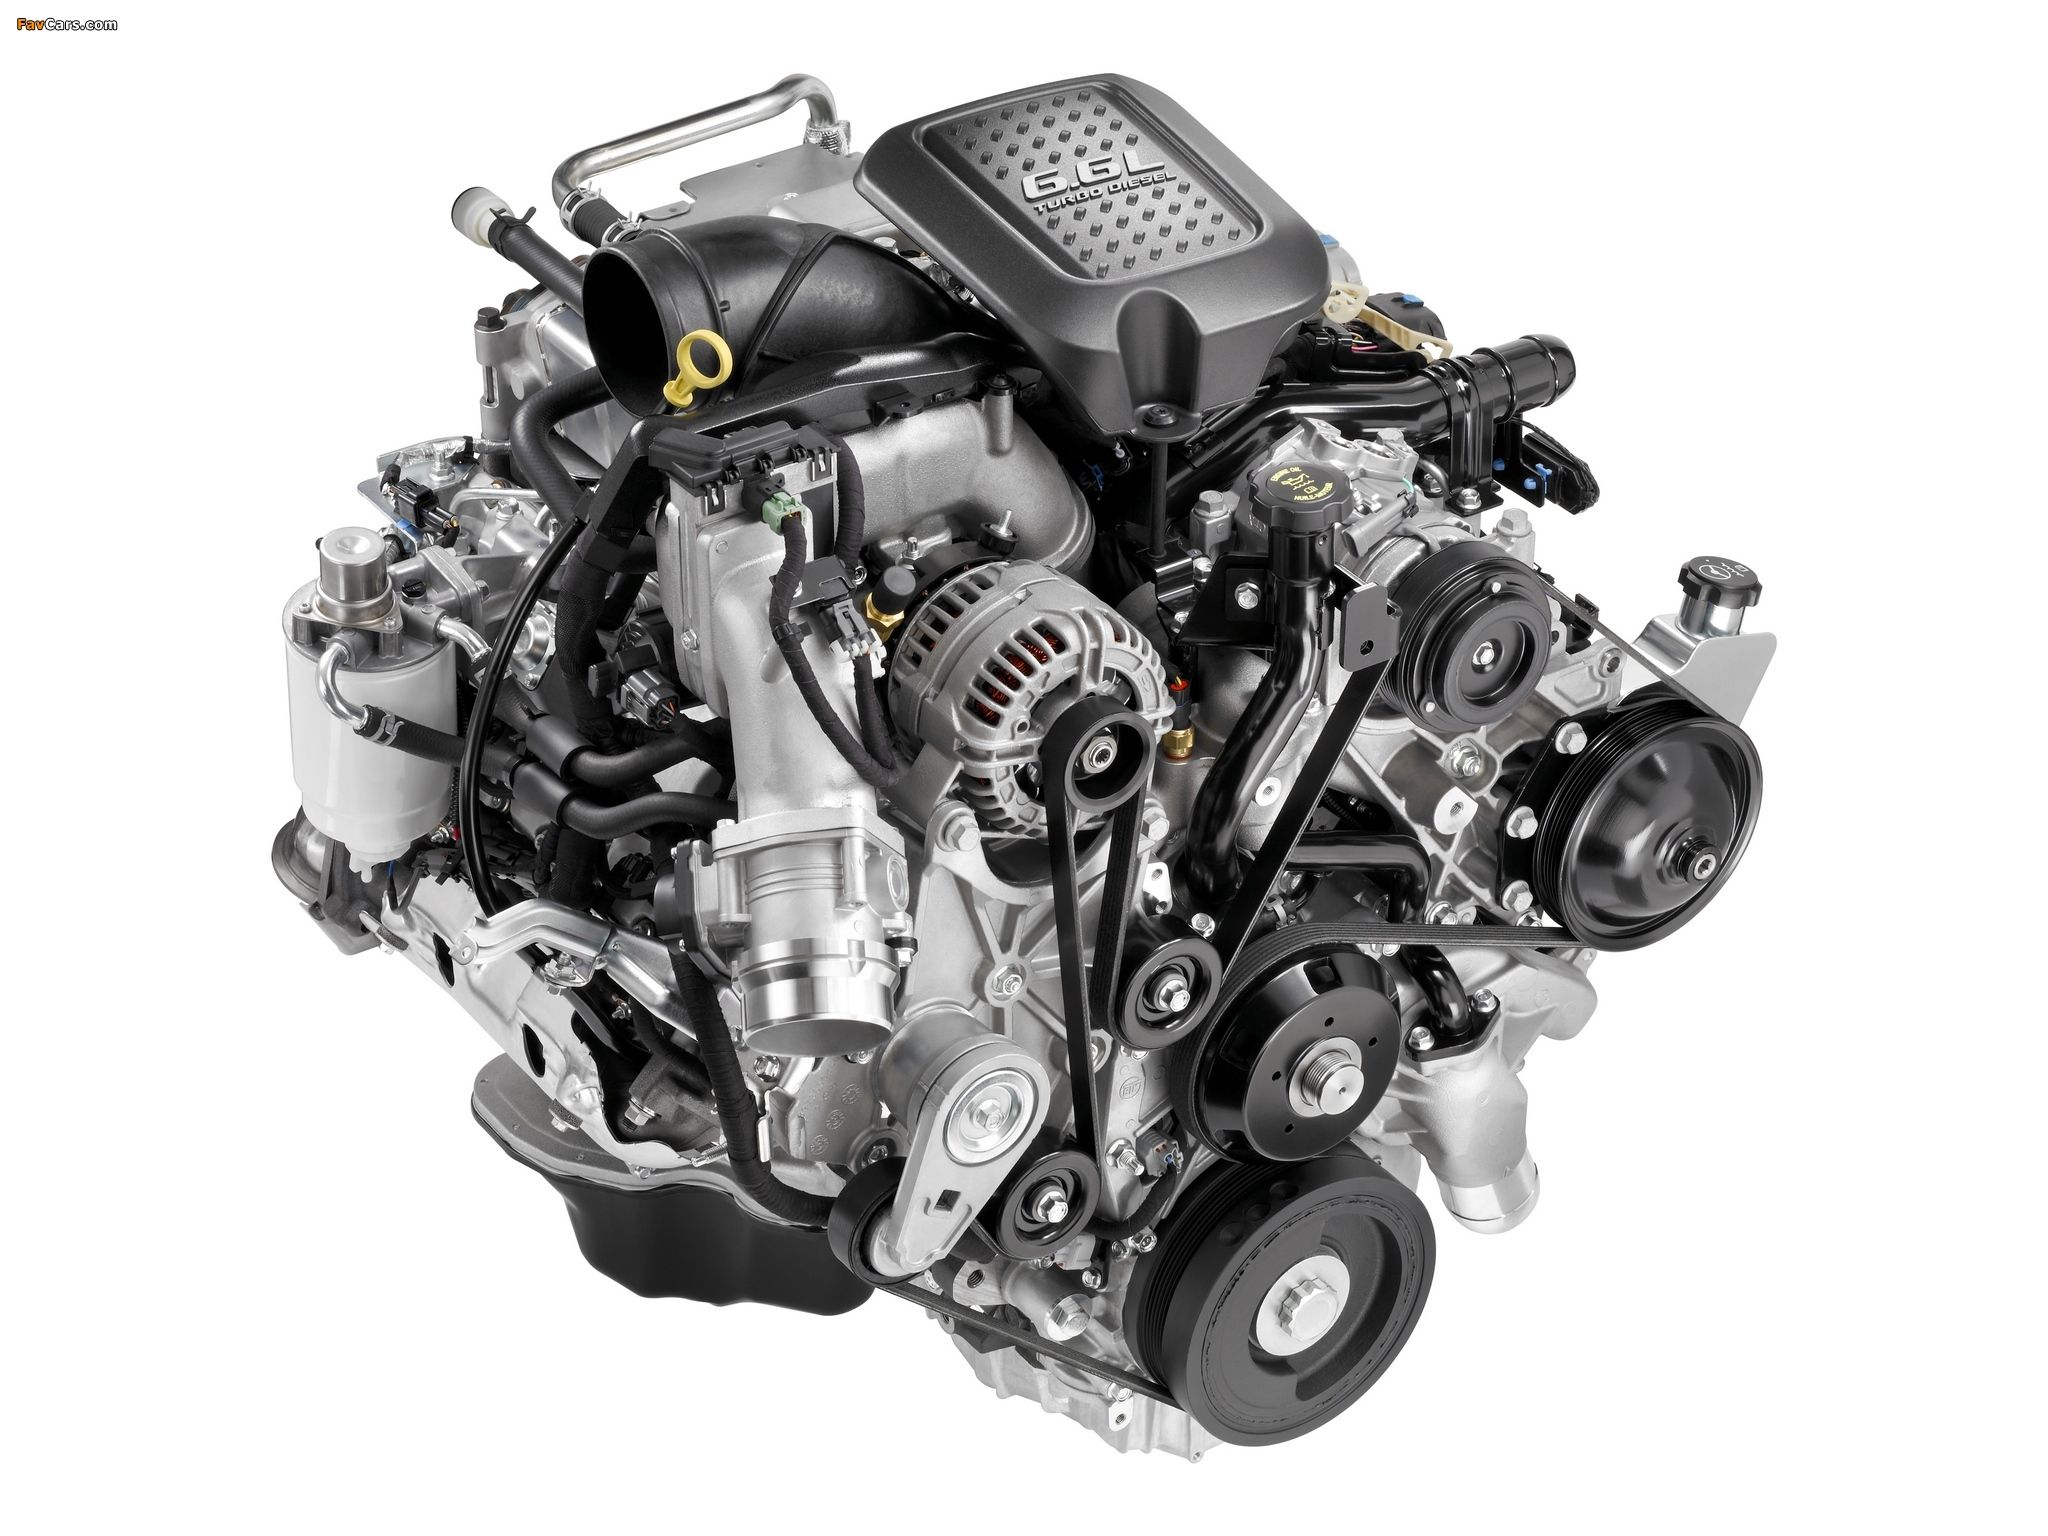 Engines Duramax Diesel 6.6L V8 Turbo (LMM) wallpaper (2048x1536)